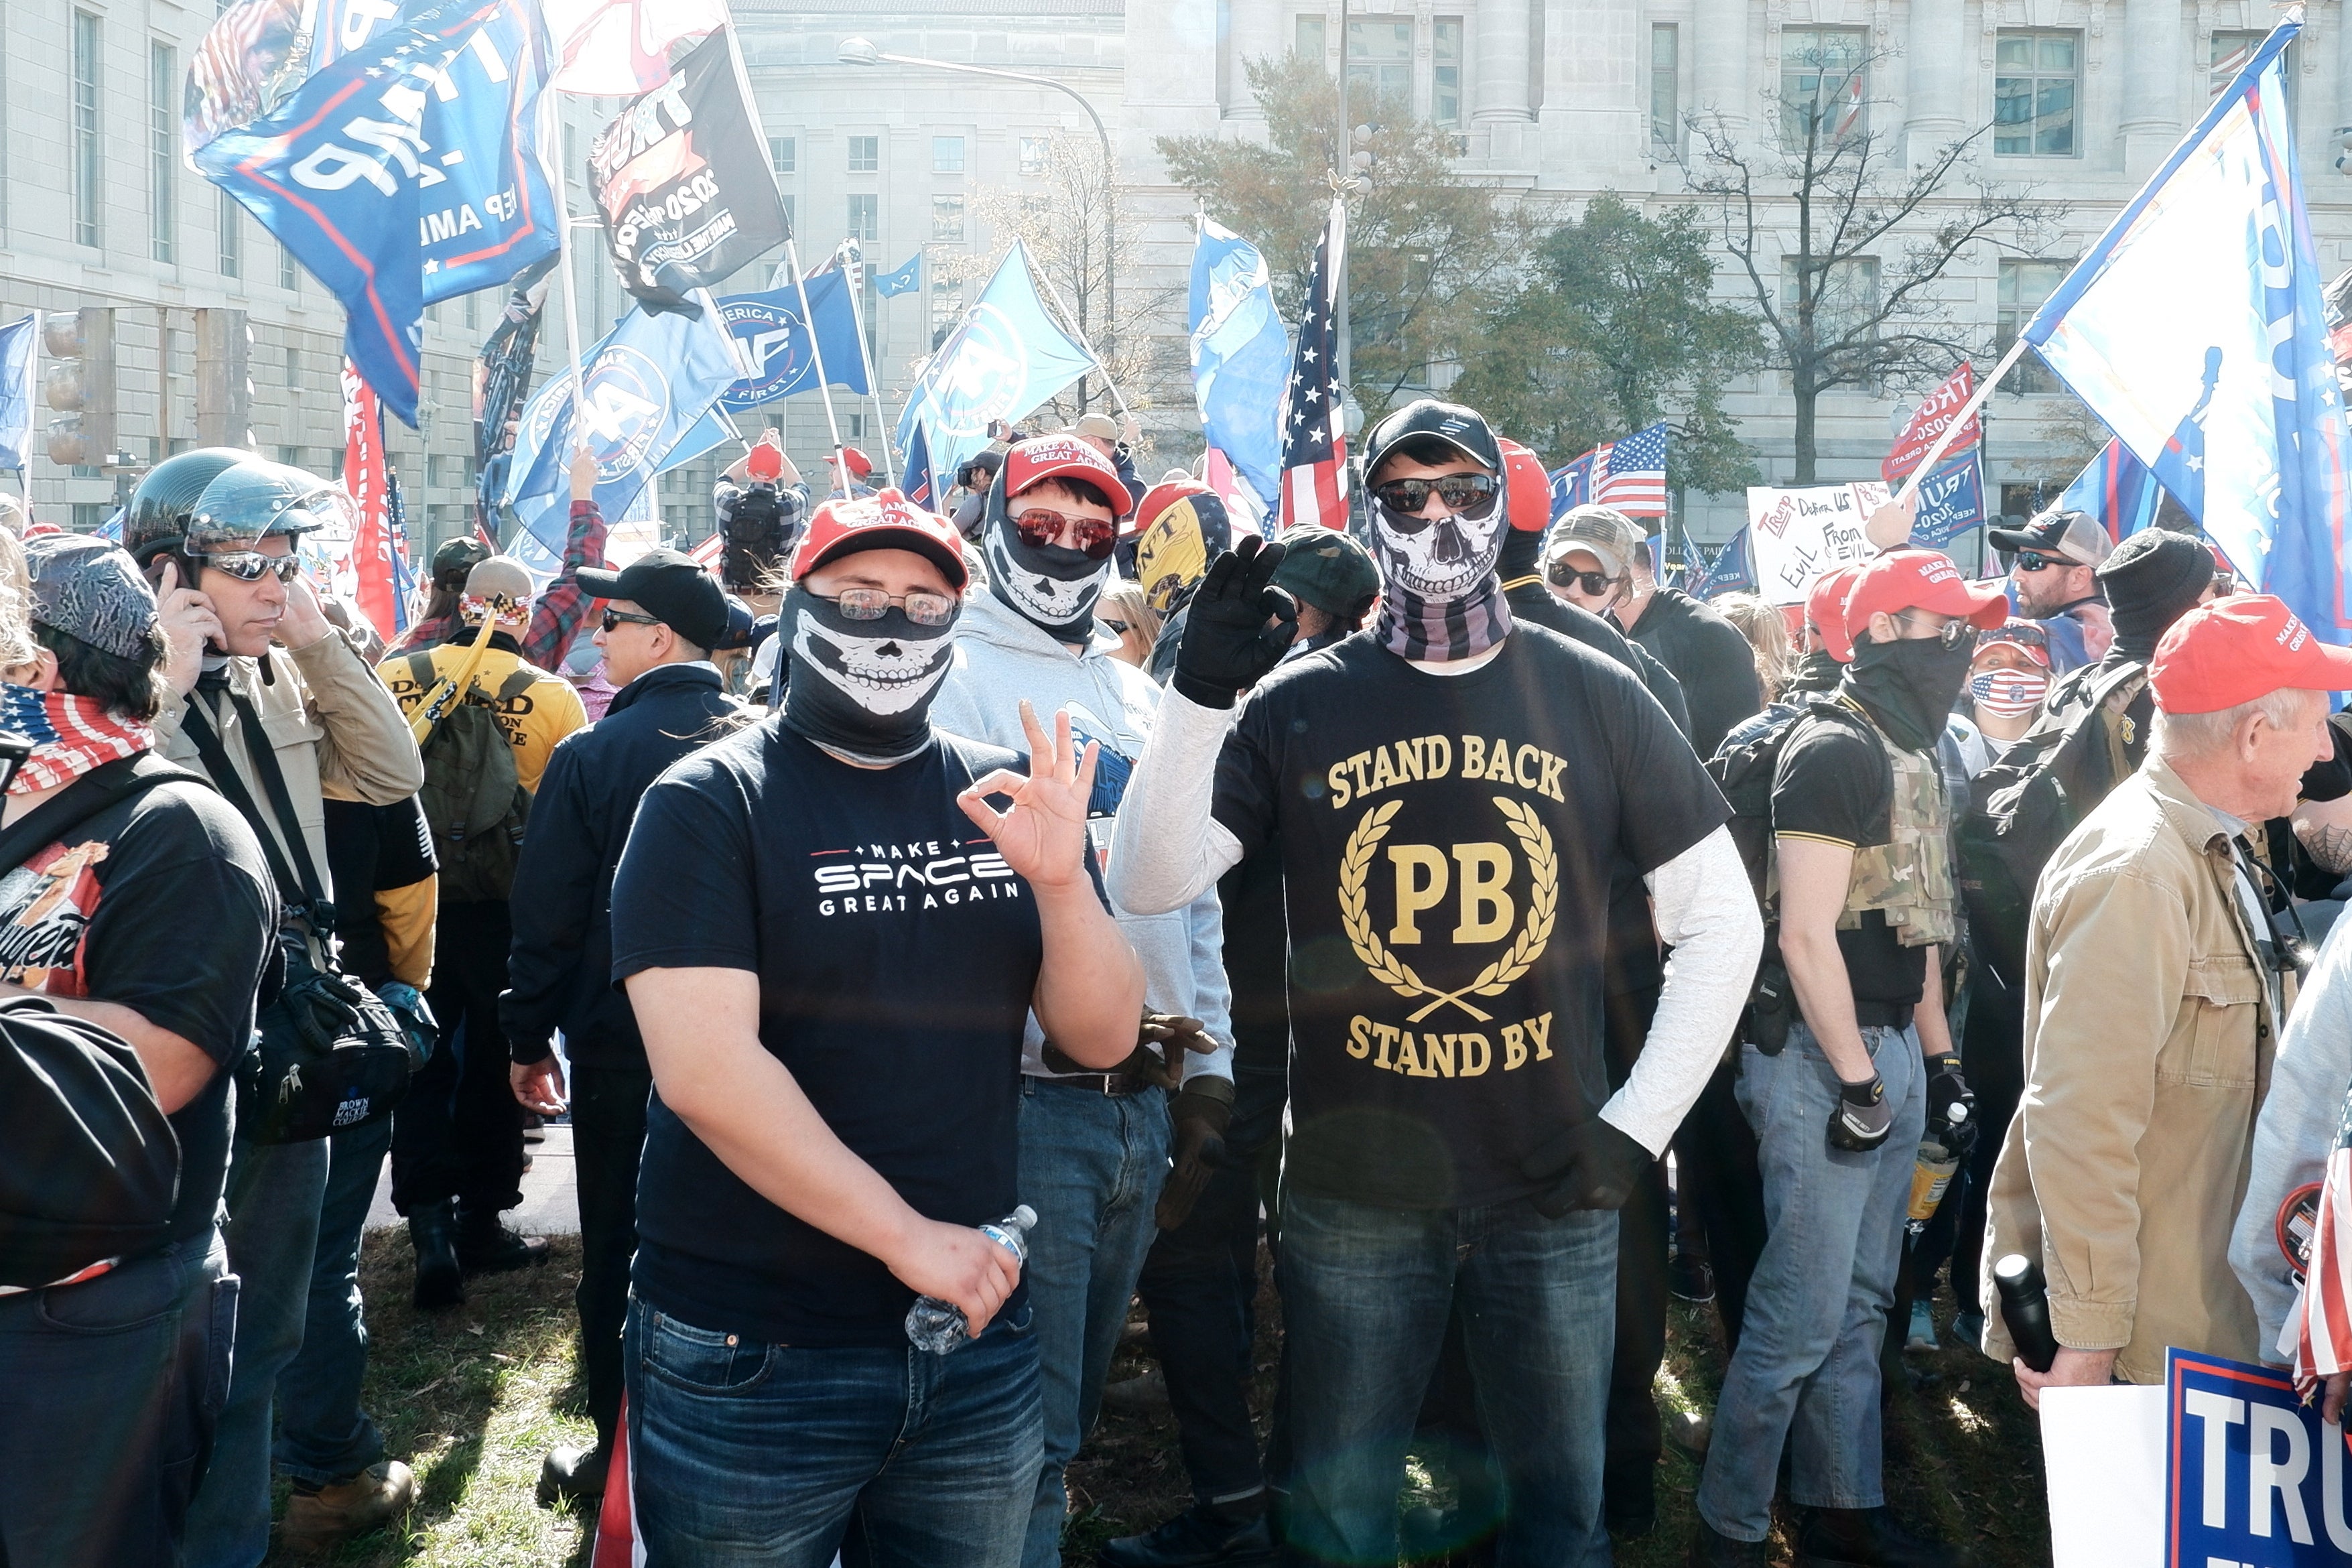 Los partidarios de este movimiento han protestado en diversas ocasiones en DC y han mostrado su apoyo a Trump